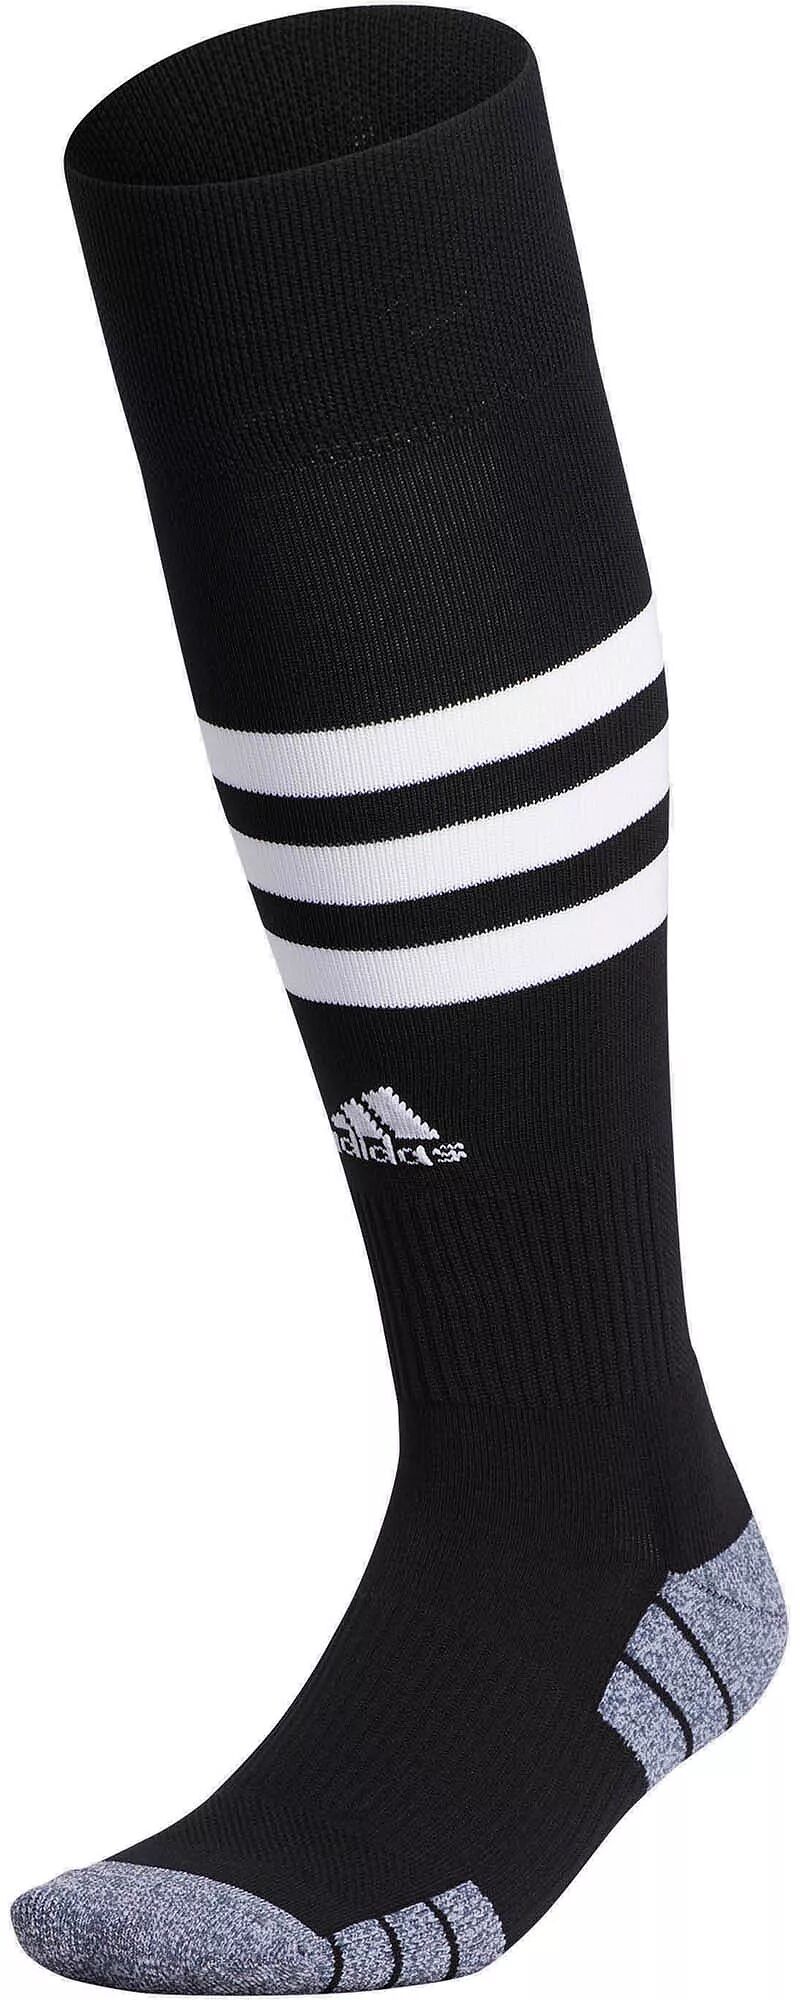 Футбольные носки Adidas с 3 полосками, черный